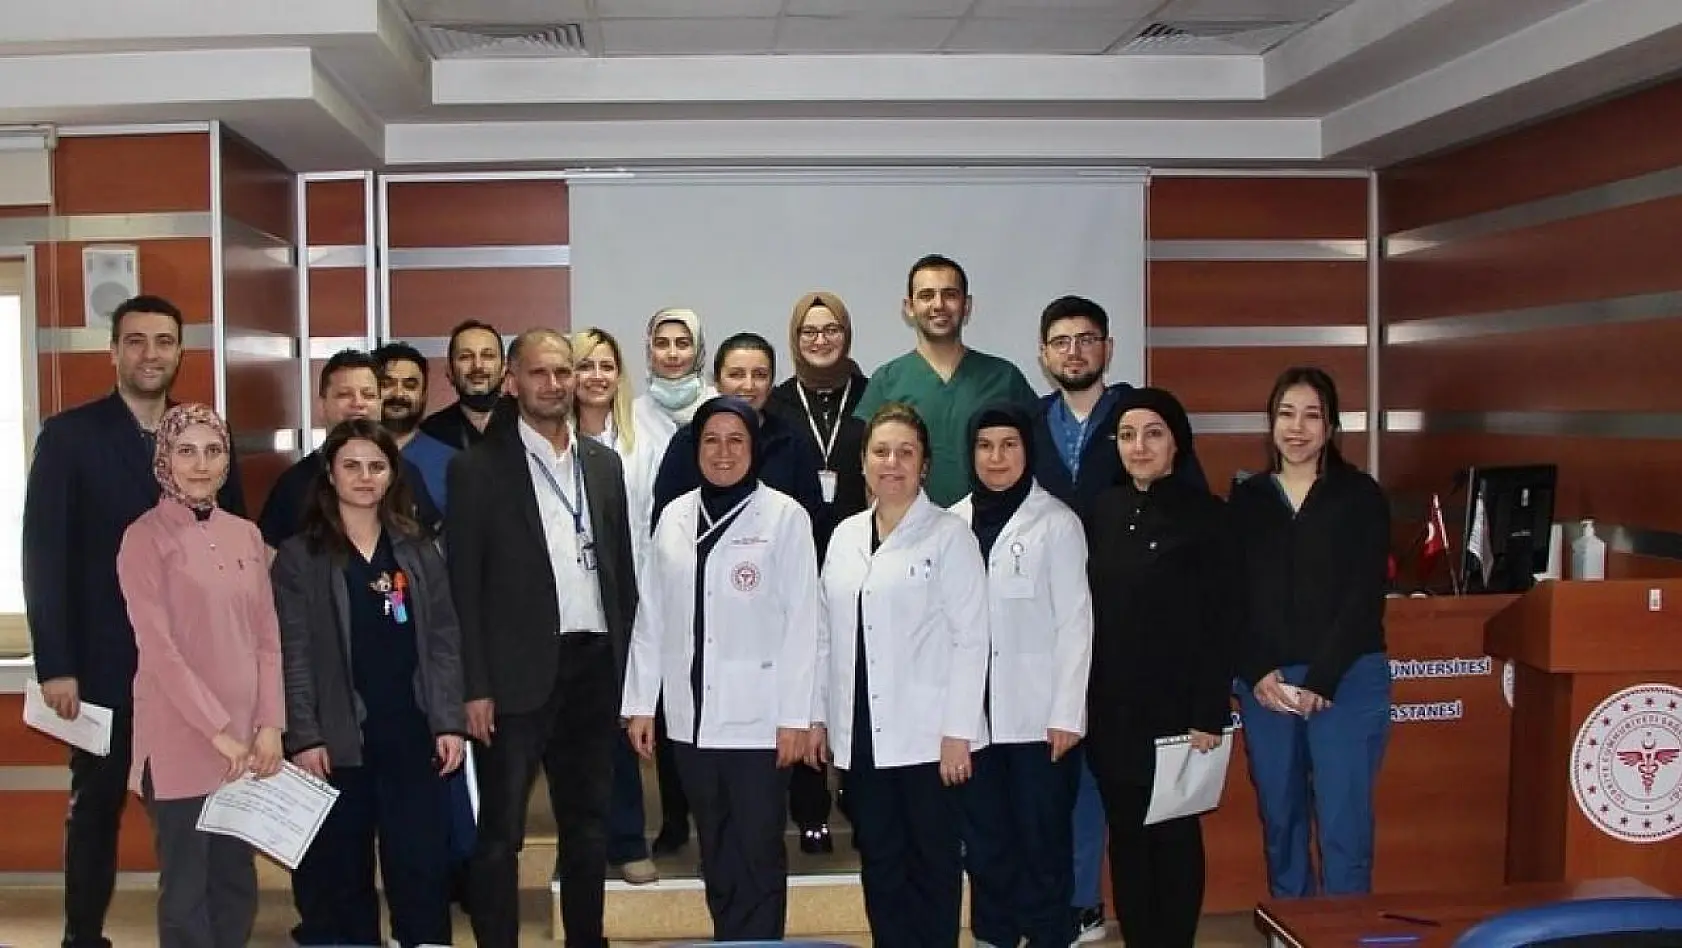 Kütahya Evliya Çelebi Hastanesinde Yoğun Bakım Hemşireliği eğitim programı